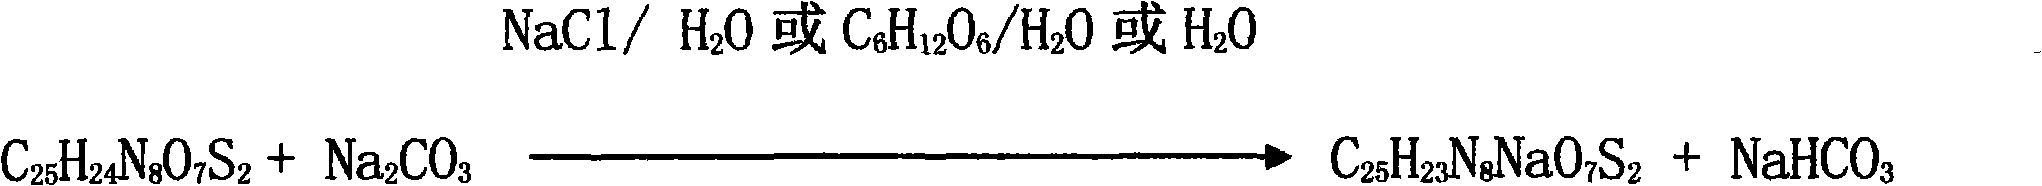 Medicine composite of superfine sterile sodium carbonate and cephems